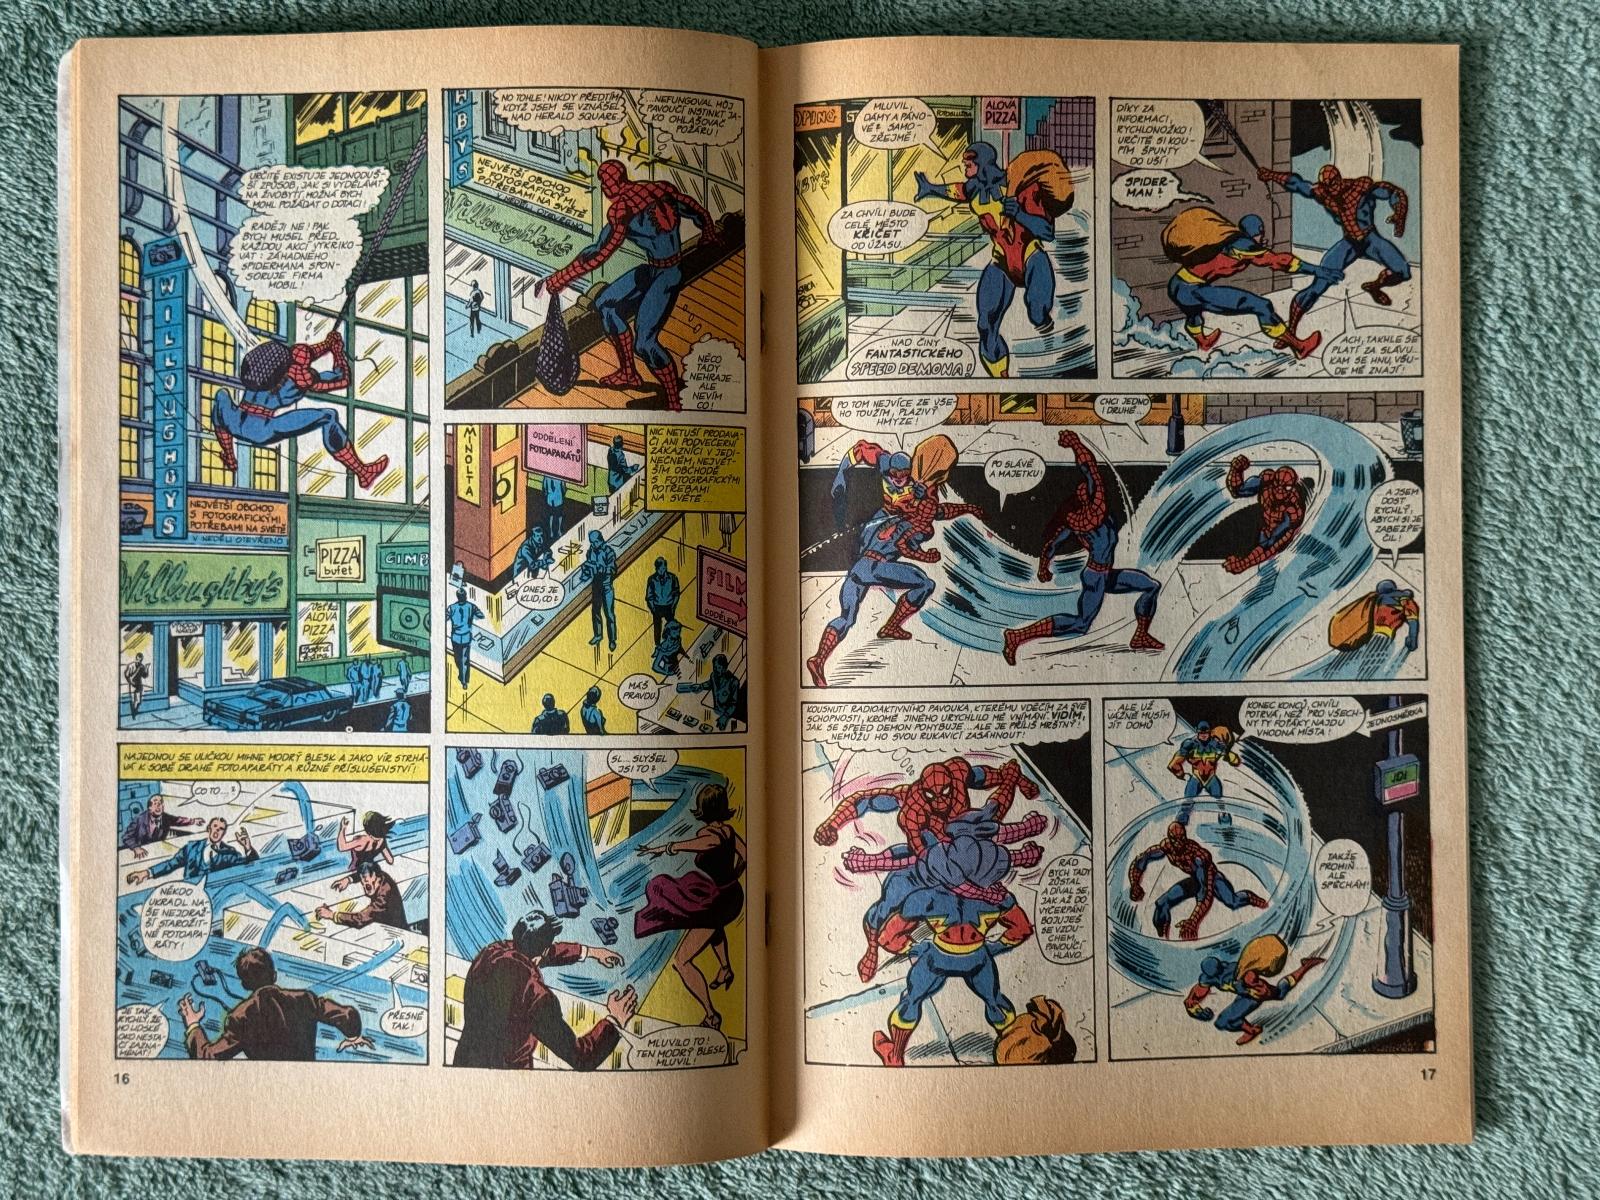 Záhadný Spider Man č. 9 - Semic Slovart - Knihy a časopisy